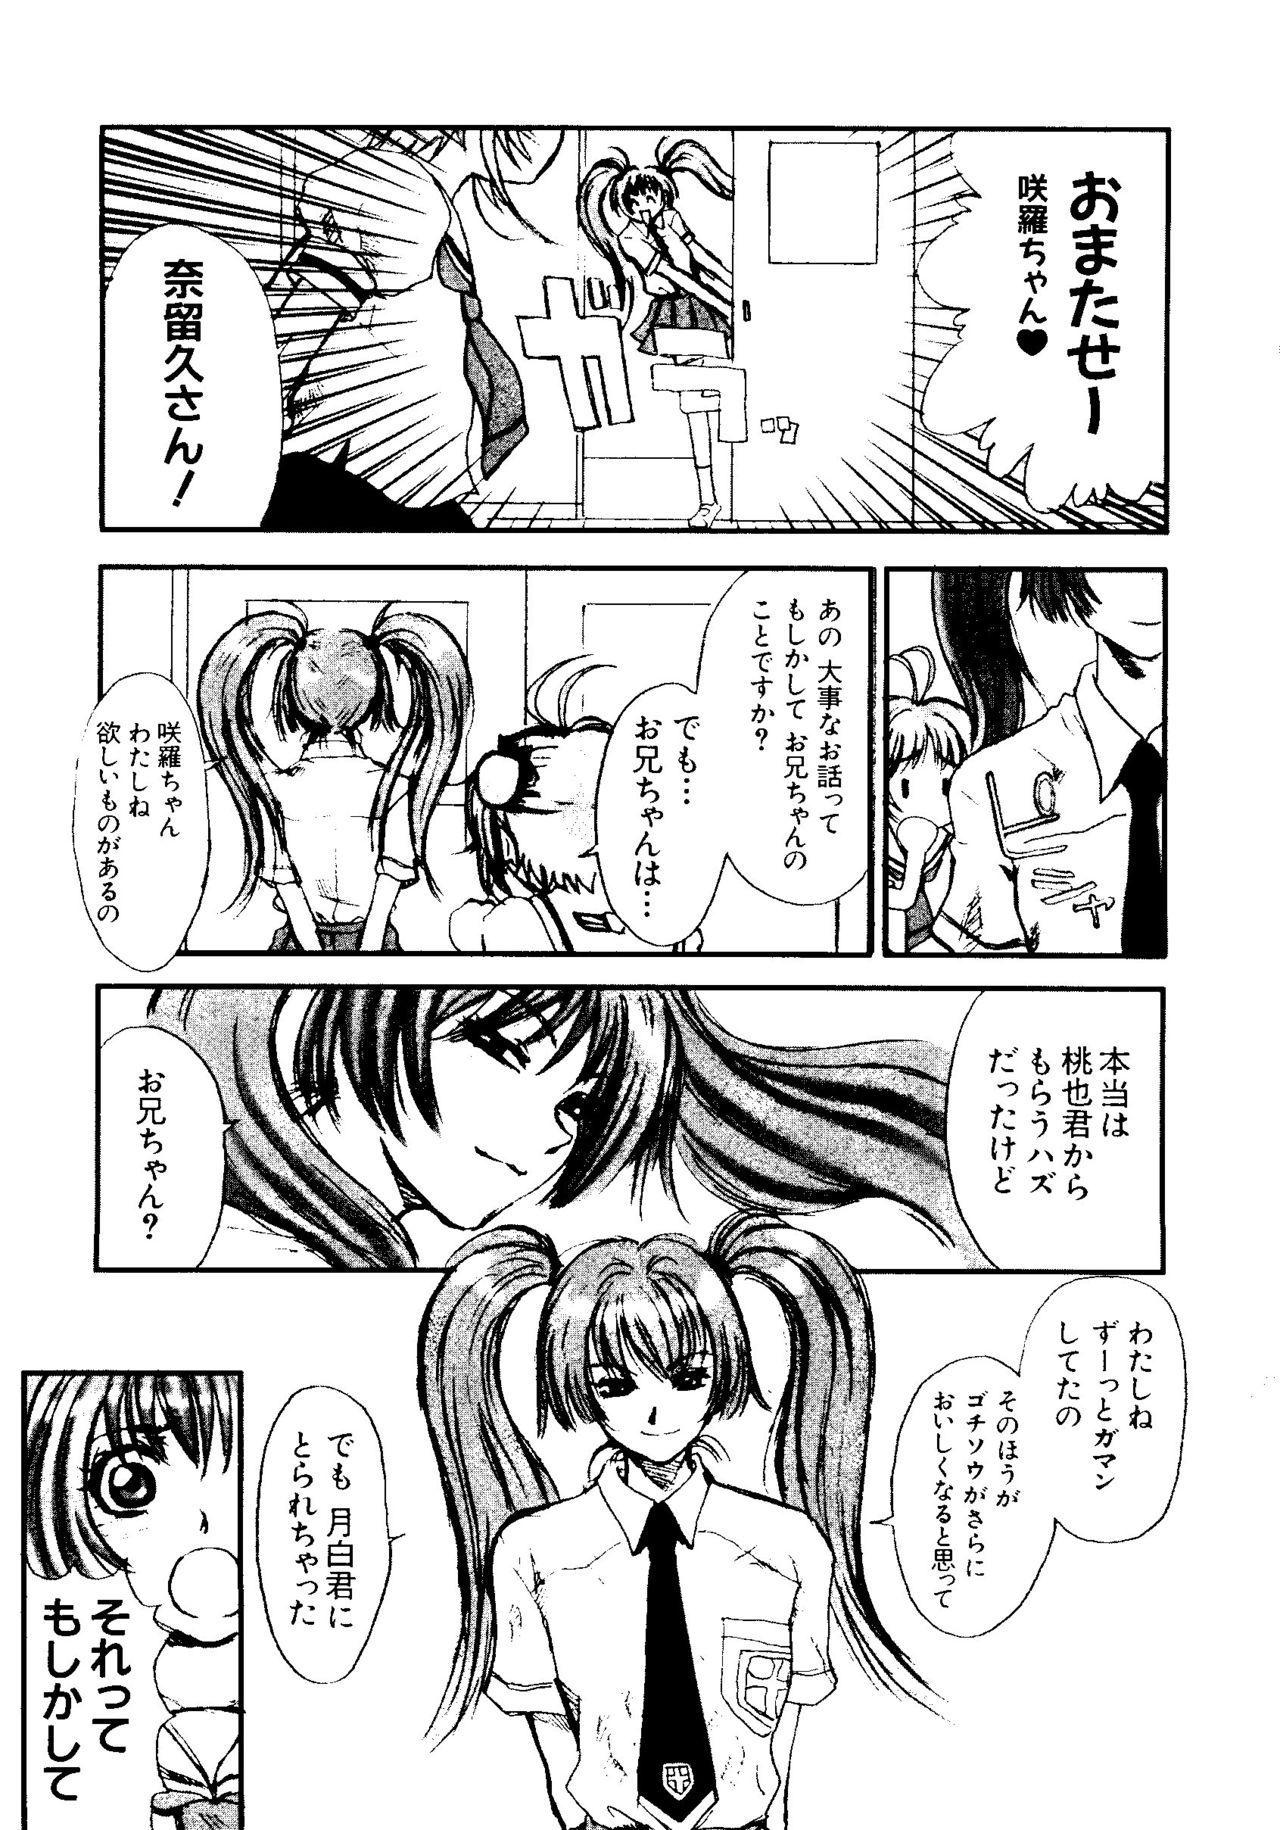 Van Love Chara Taizen No. 5 - Cardcaptor sakura Ojamajo doremi Digimon adventure Ecoko Azuki chan Juggs - Page 8